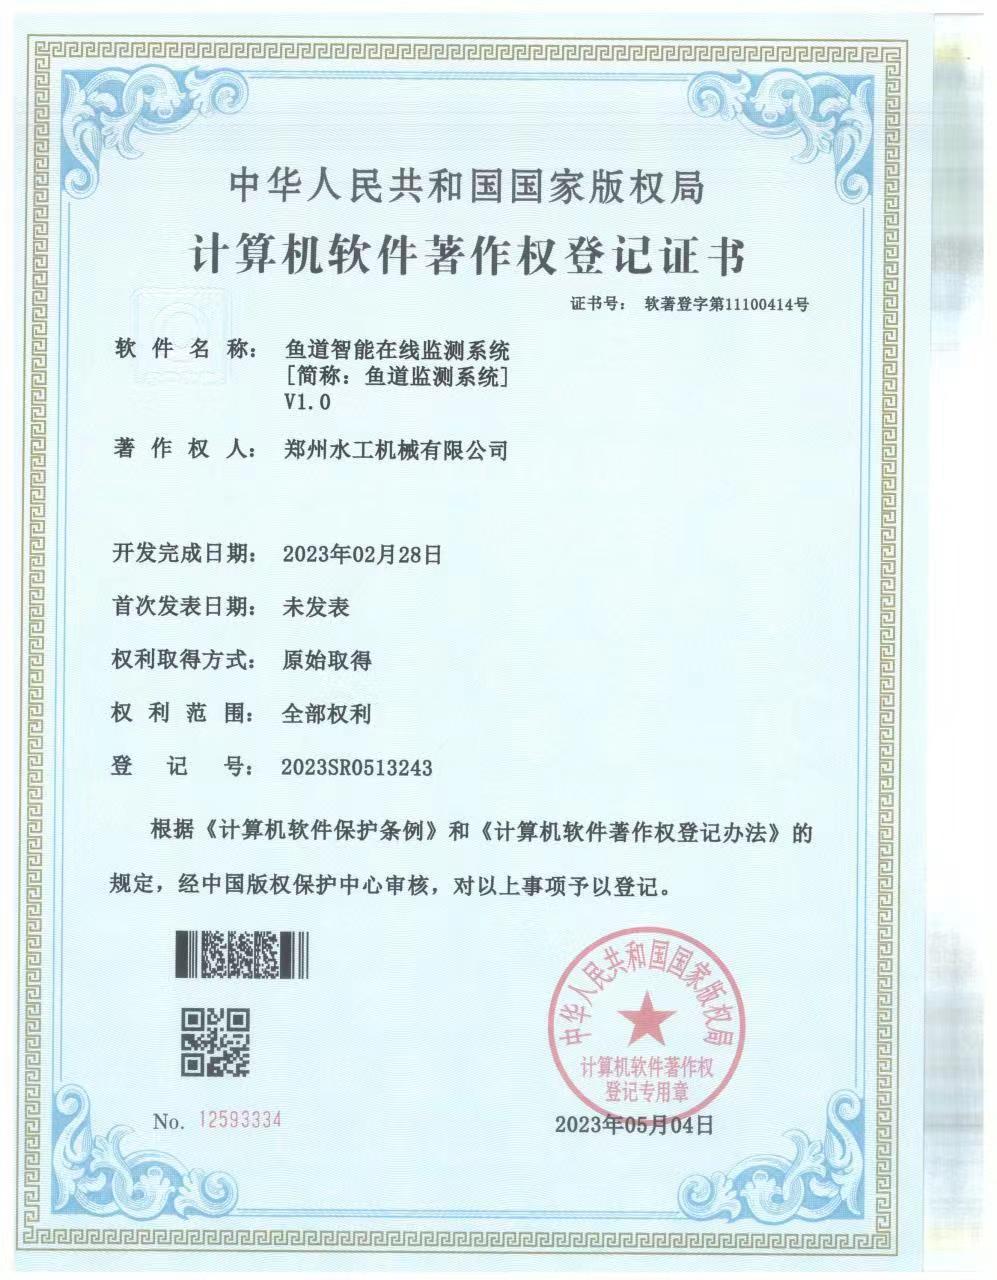 郑州水工电气公司申请的“鱼道智能在线监测系统软件著作权”正式通过审批。